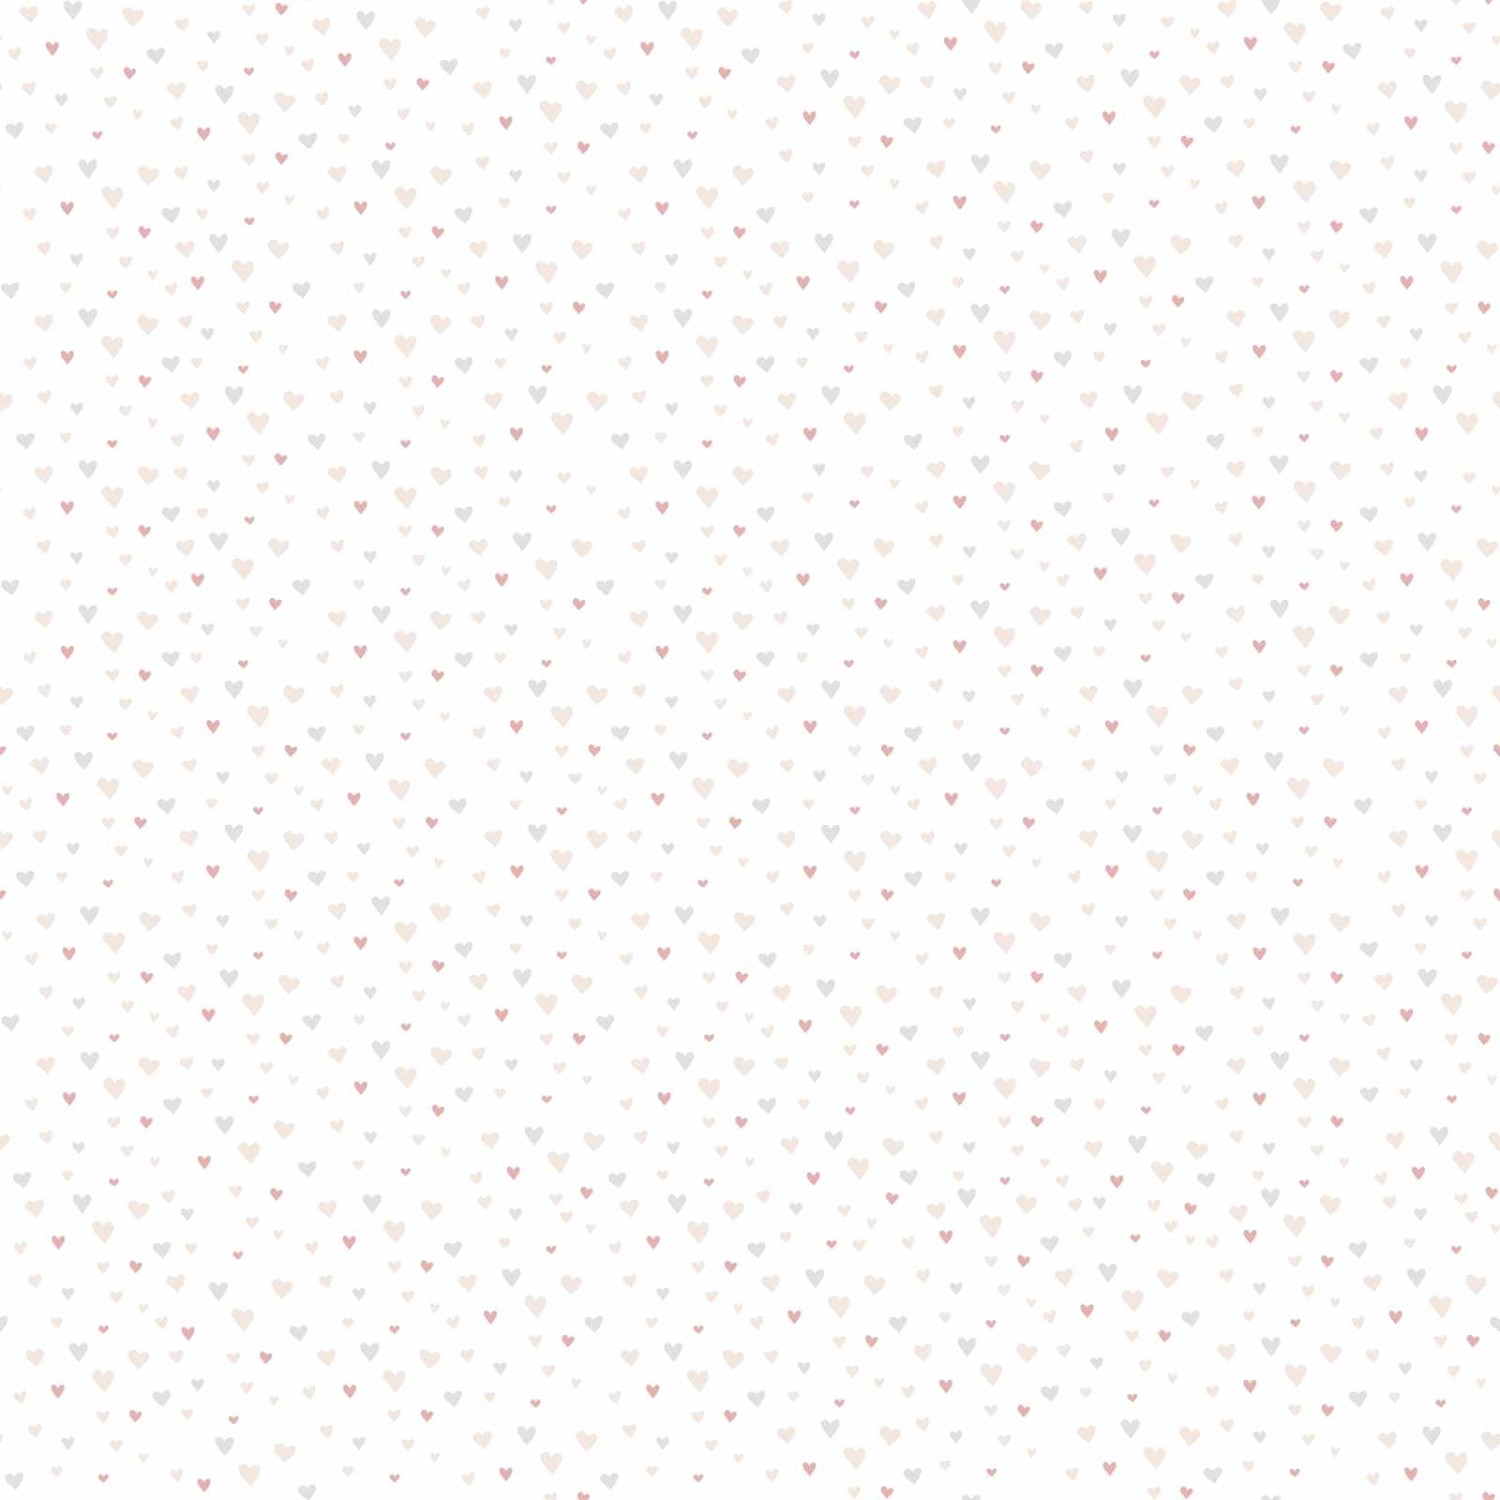 Bricoflor Tapete mit Herzen in Grau und Rosa Weiße Babyzimmer Tapete mit Herzchen Muster Vlies Kindertapete Ideal für Mädchenzimmer von Bricoflor